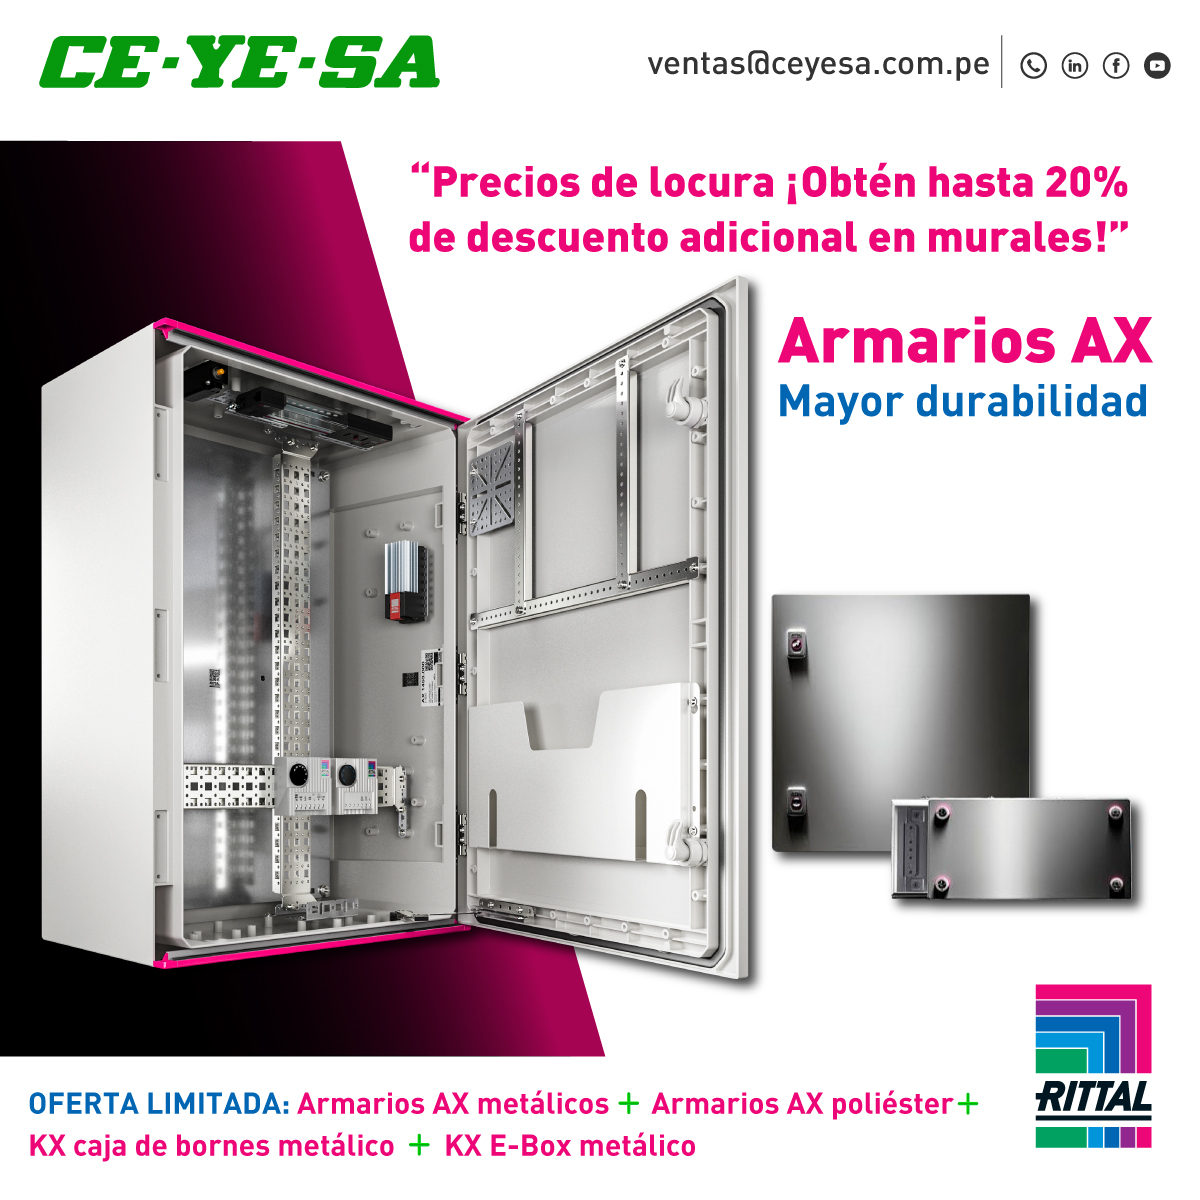 Flyer promoción Rittal-Ceyesa 2021